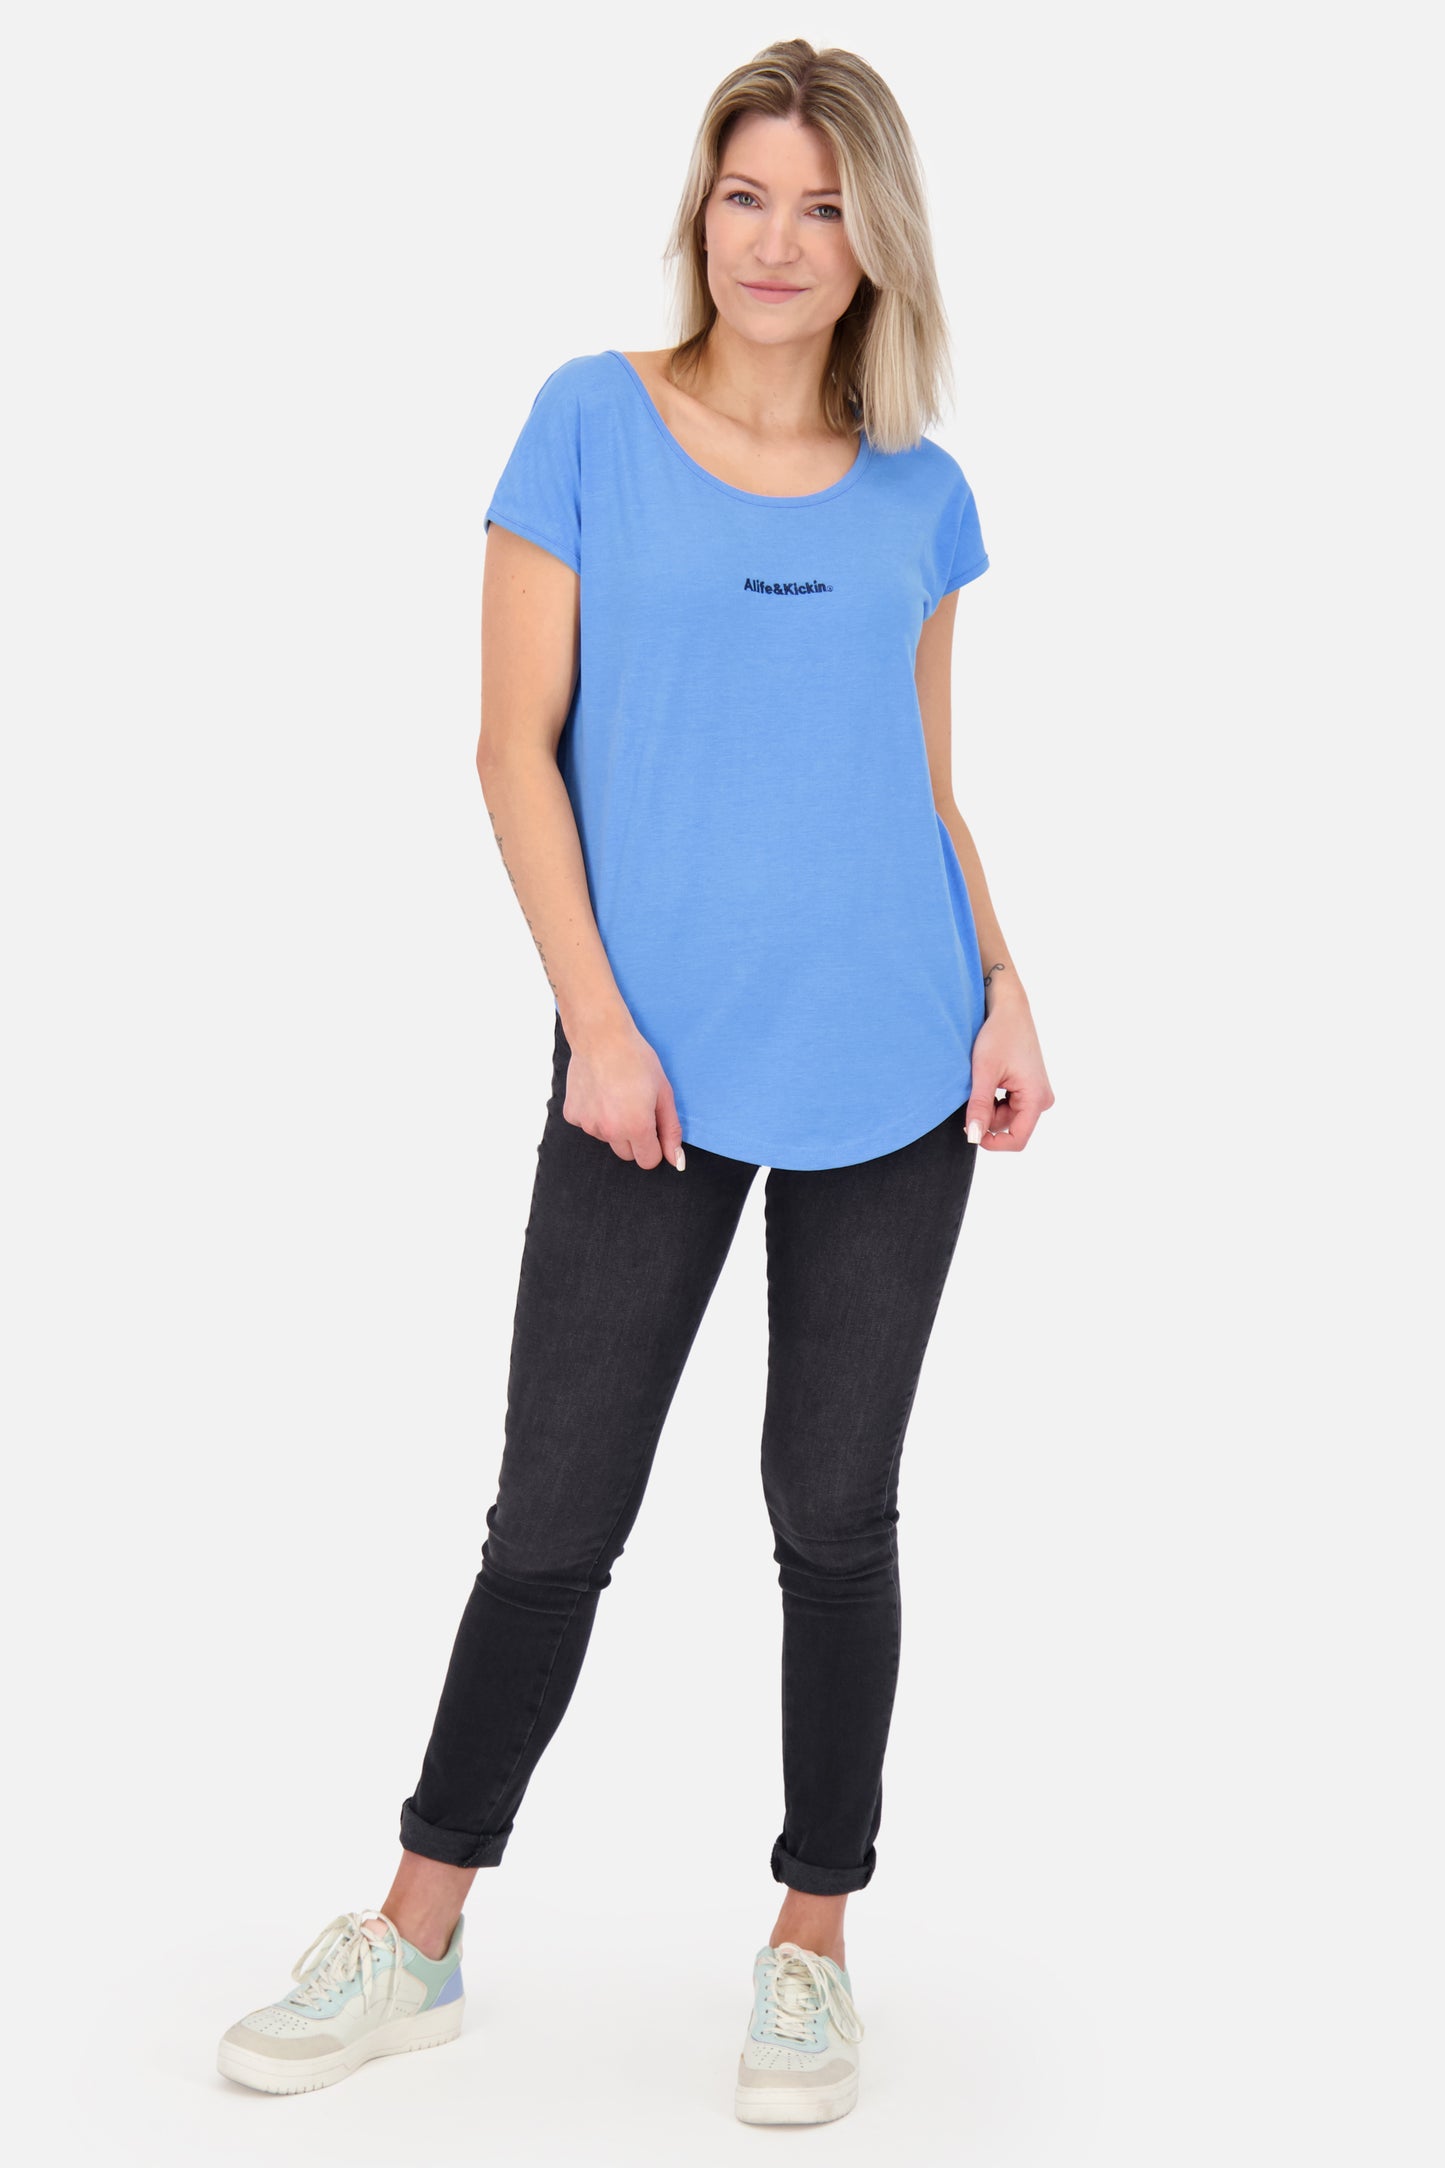 Luftig leicht und sportlich: Das Damen-T-Shirt SelinaAK E  Blau